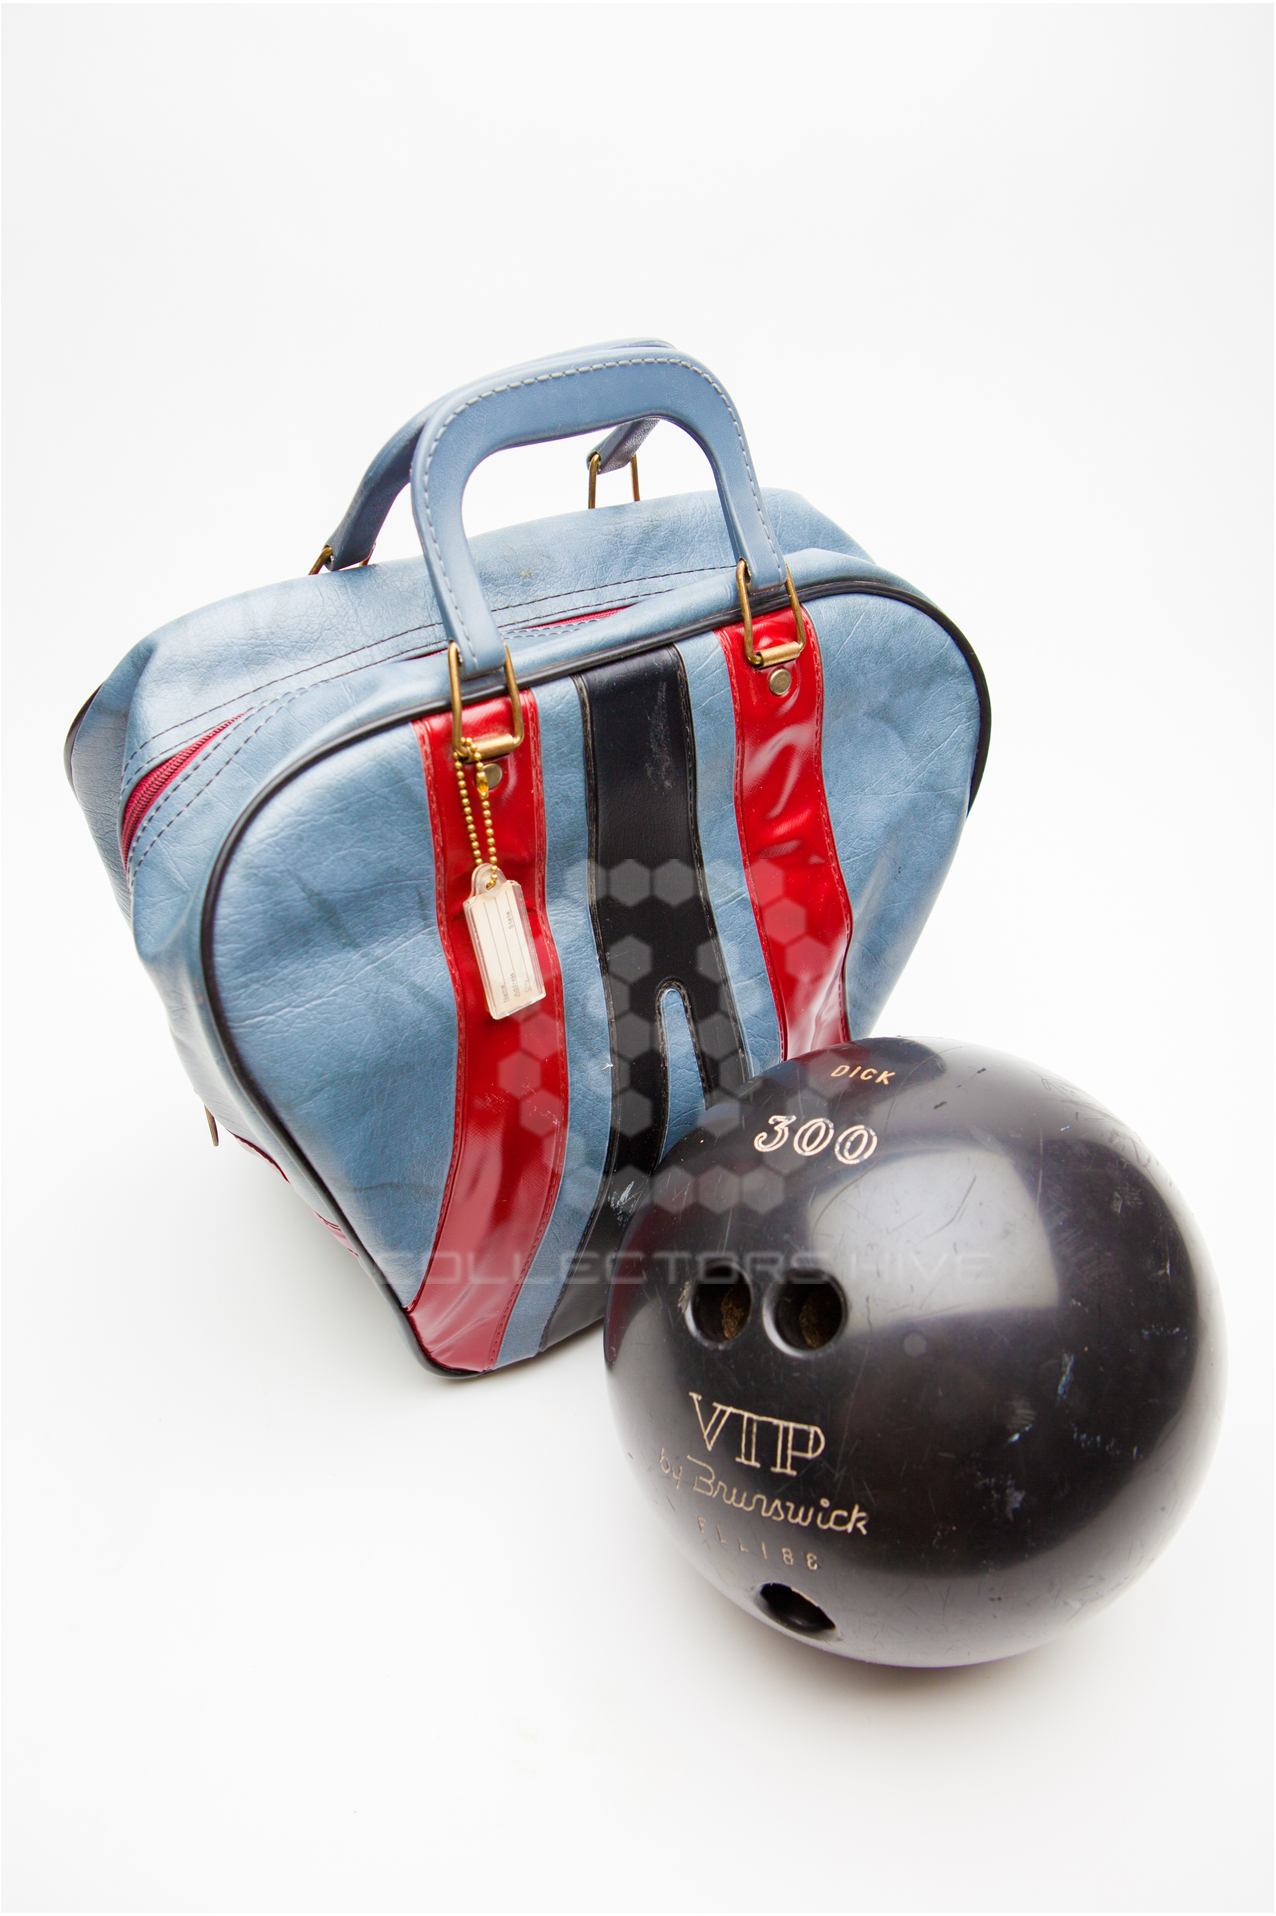 Bowling Ball and Bag